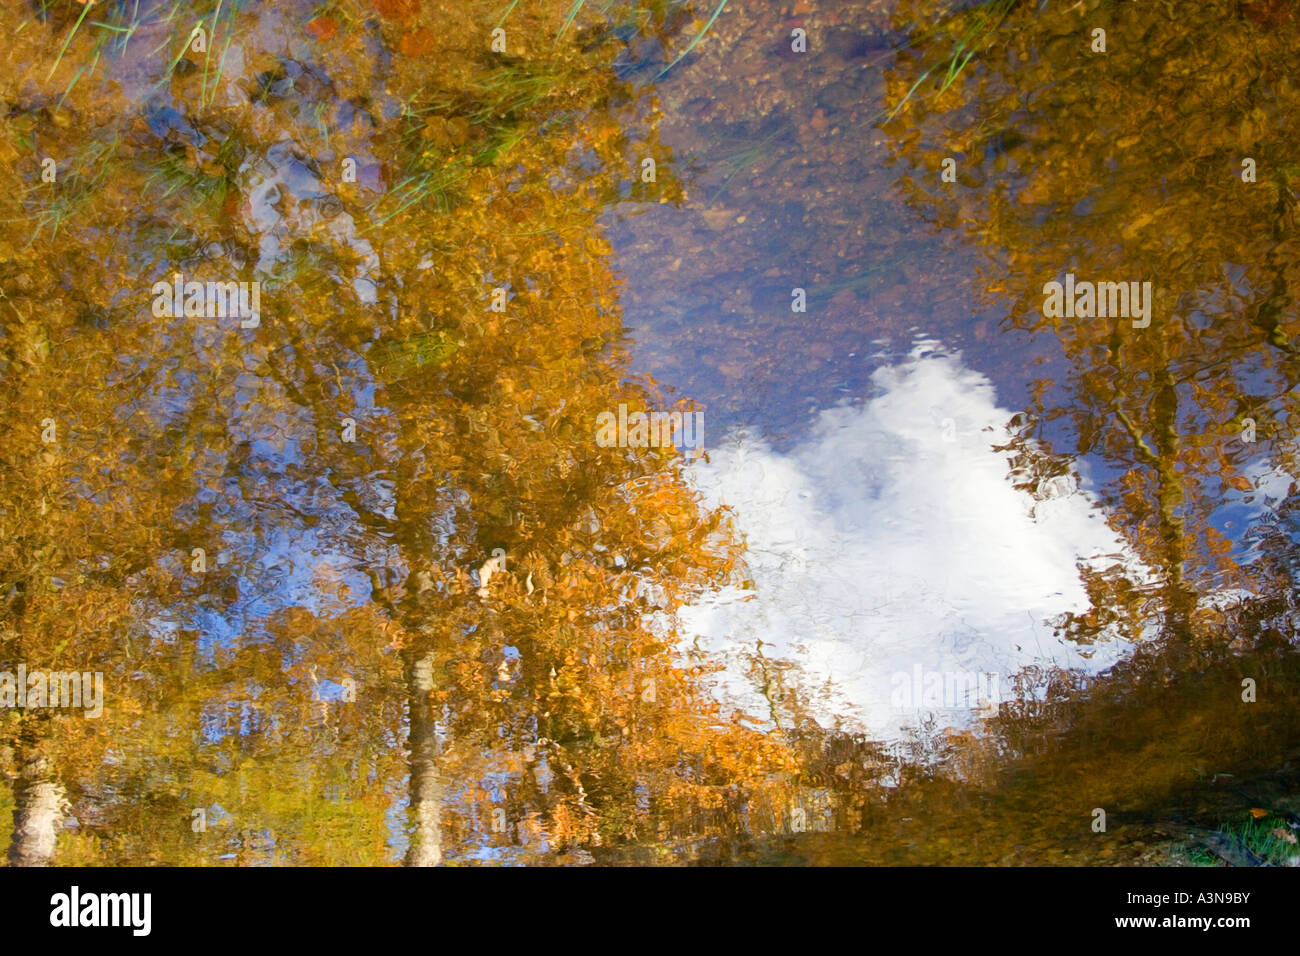 Les arbres et les cumulus se reflète dans l'eau de bassin. Parc National de New Forest. Le Hampshire. UK Banque D'Images